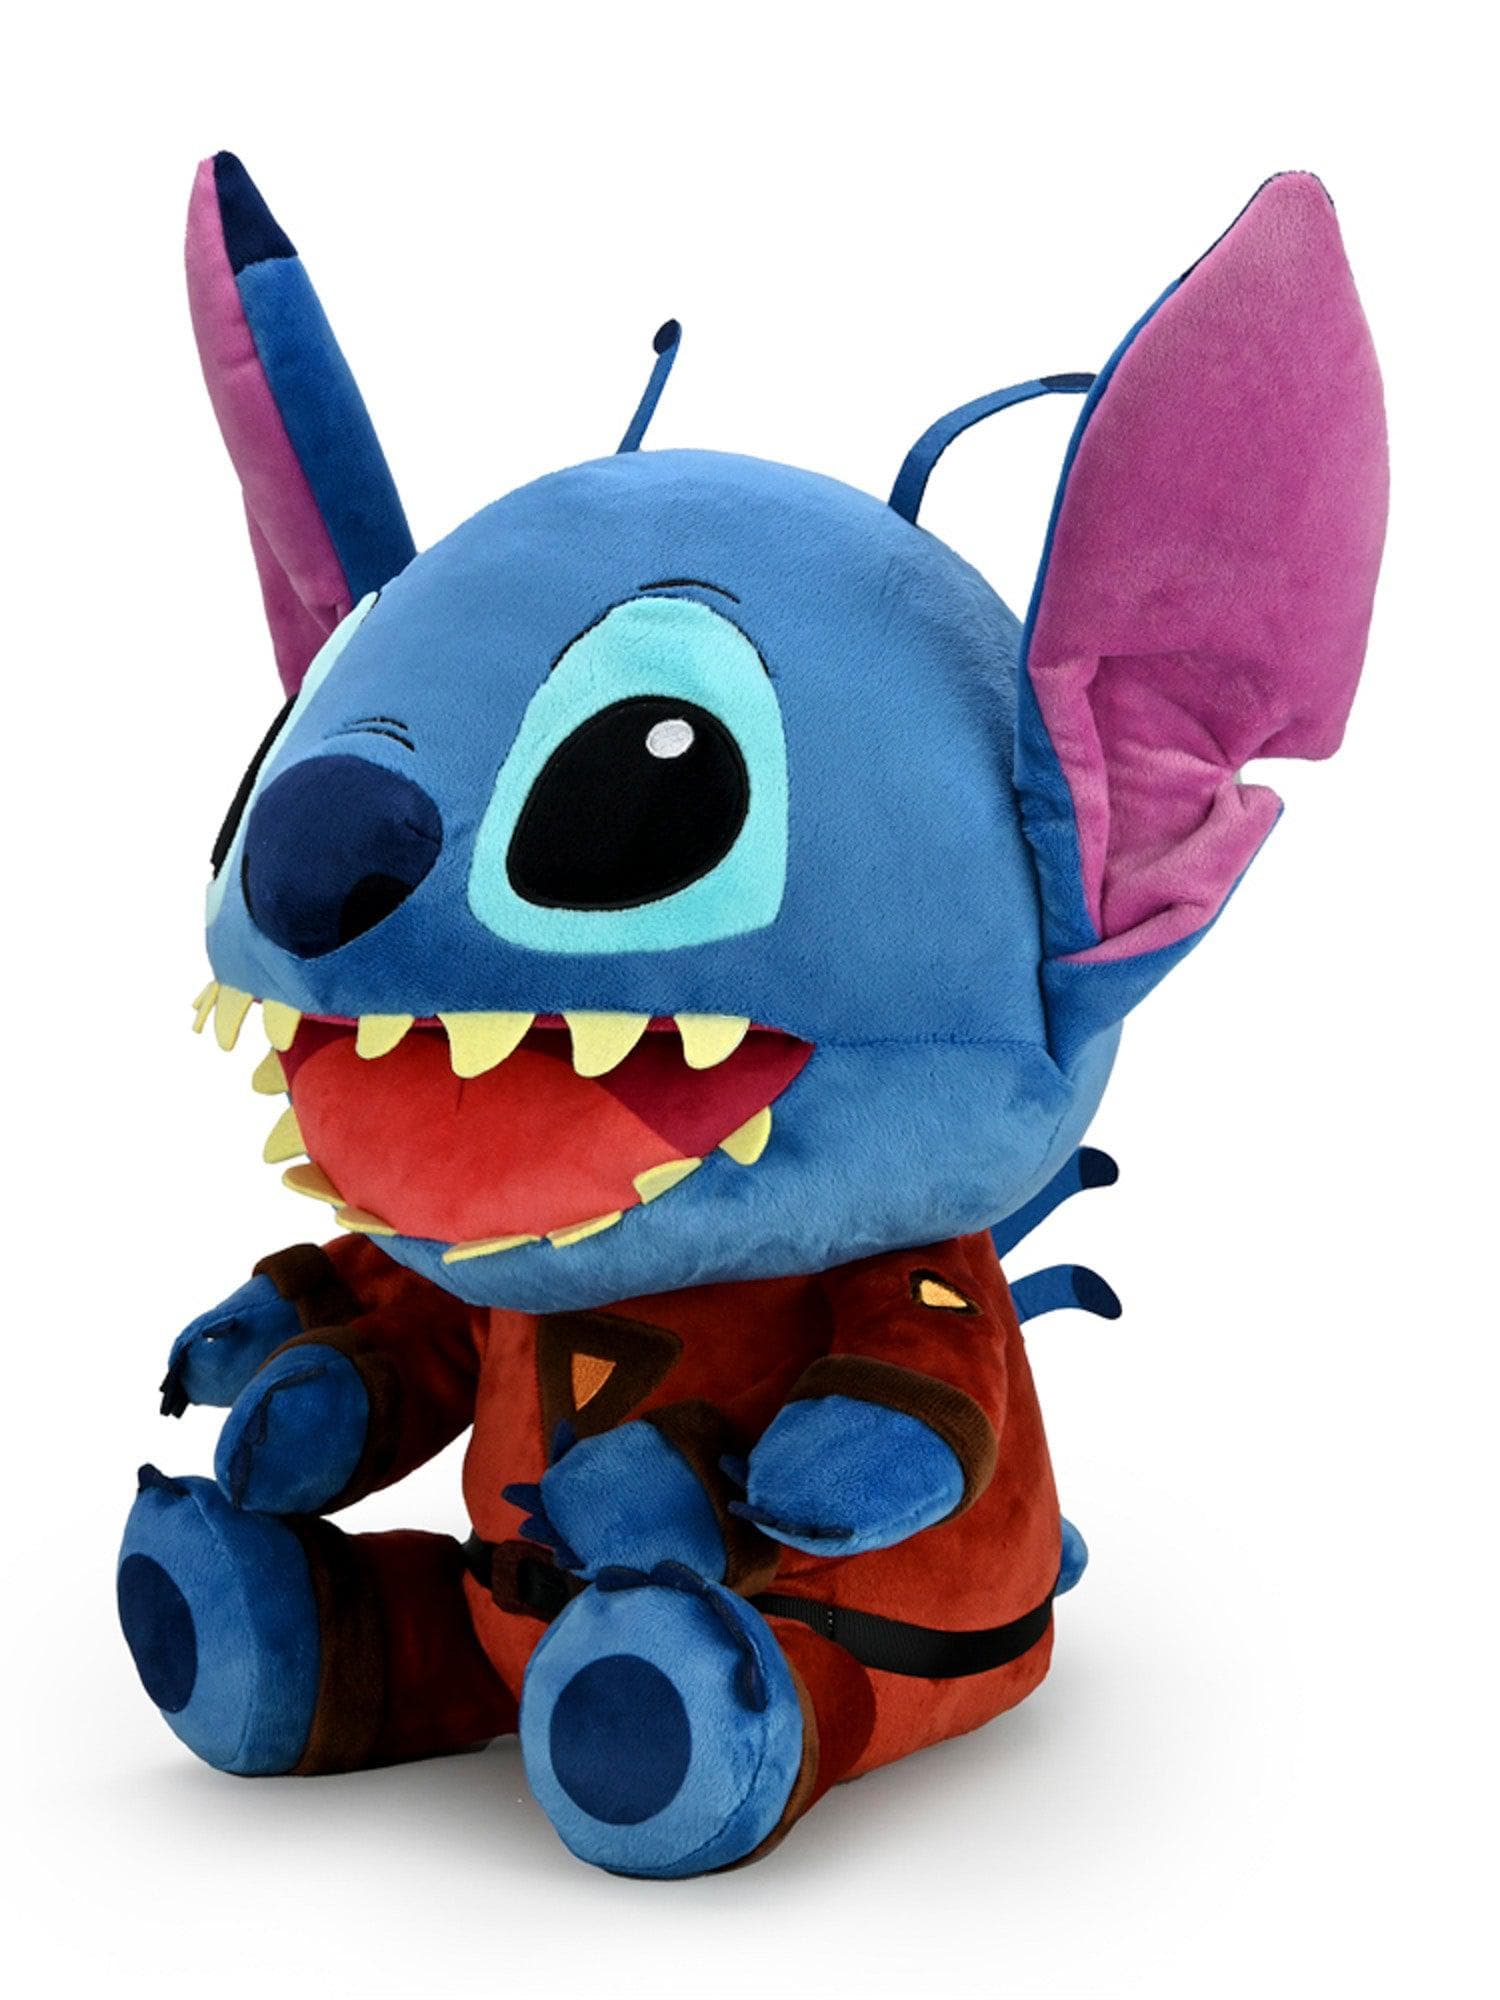 Kidrobot - HugMe Plush - Disney's Lilo & Stitch - Evil Stitch - costumes.com